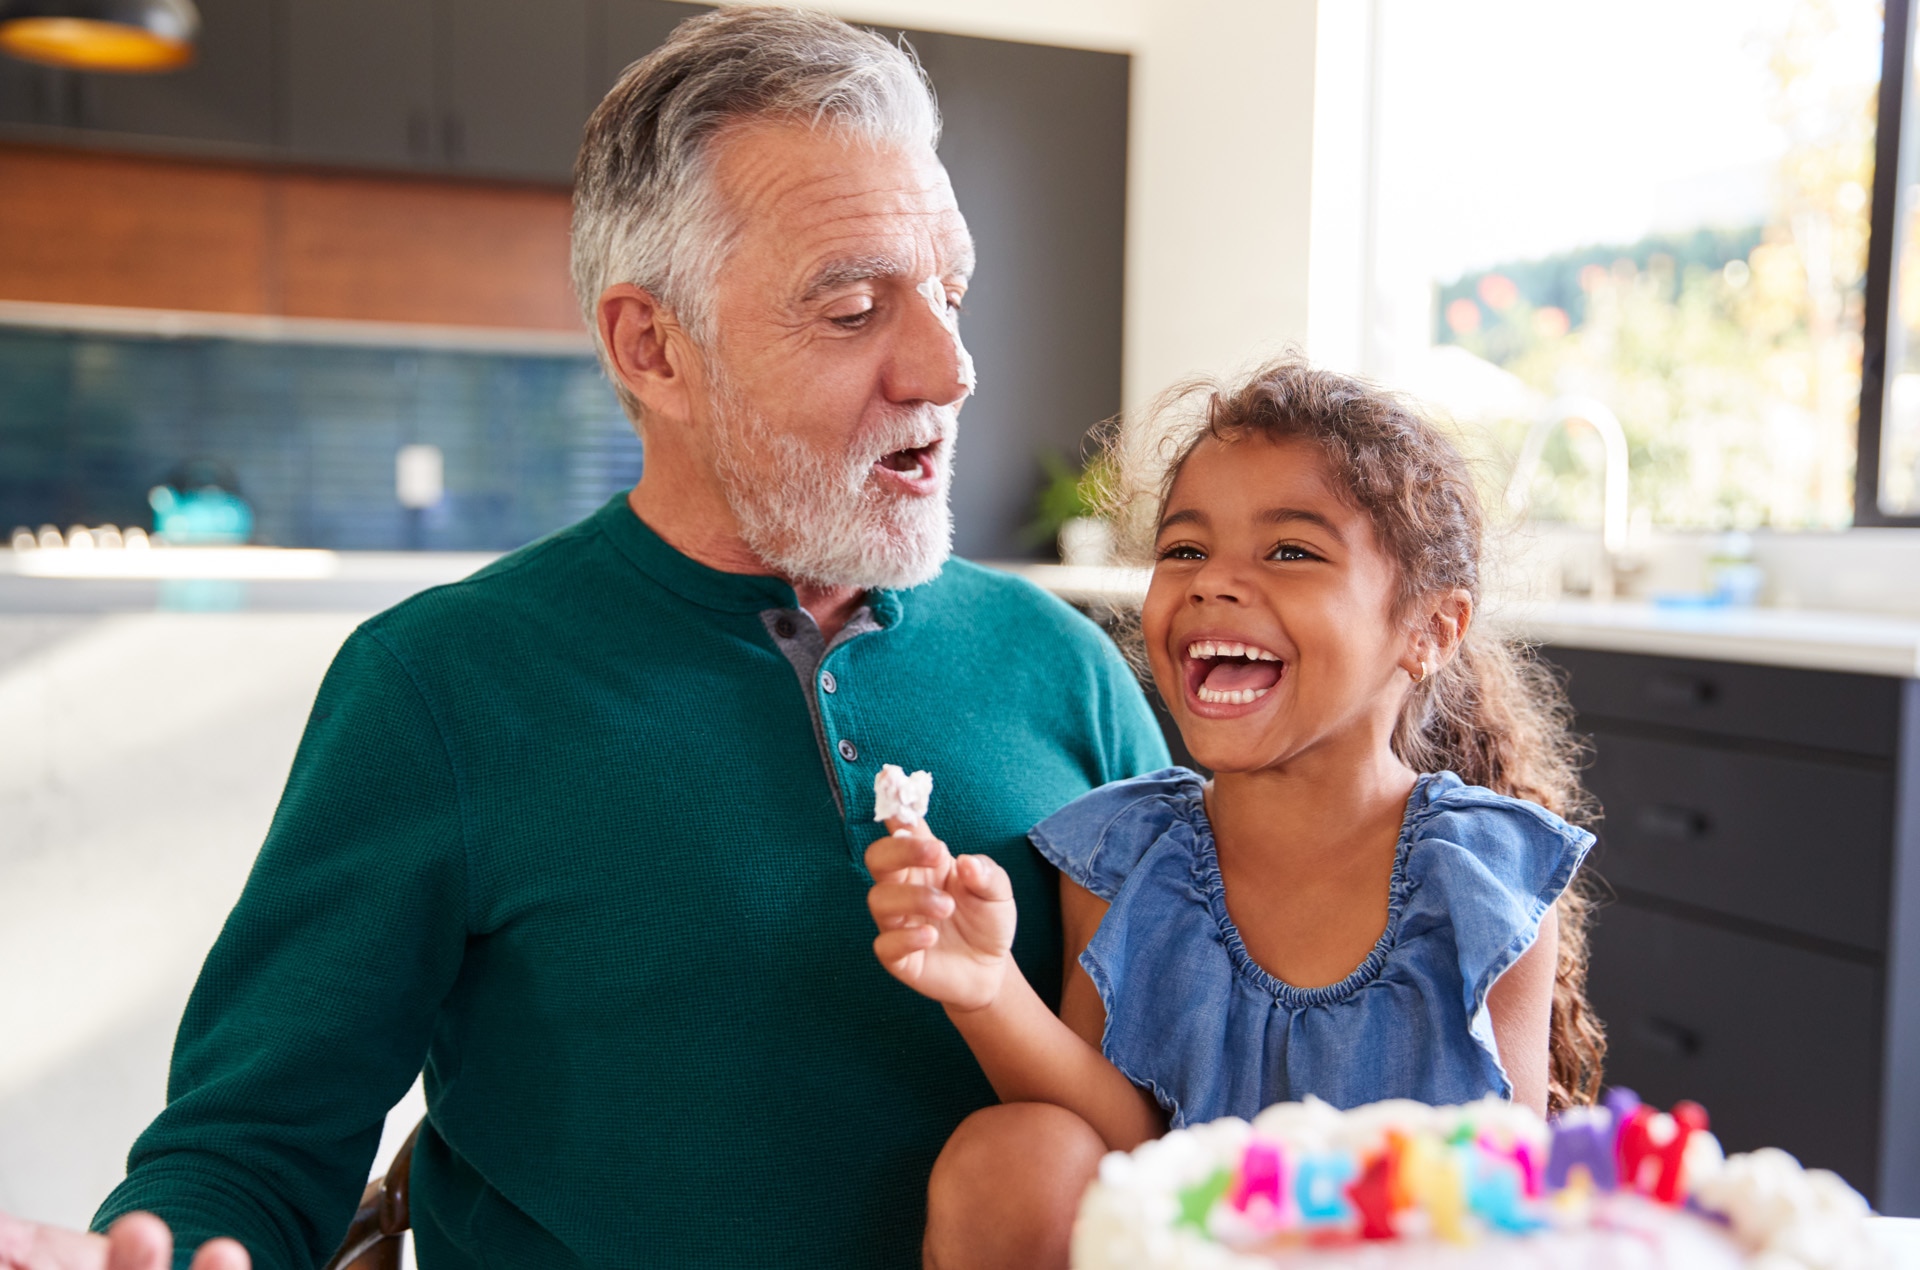 Una nieta celebra un cumpleaños con su abuelo poniéndole crema pastelera en la nariz y riéndose